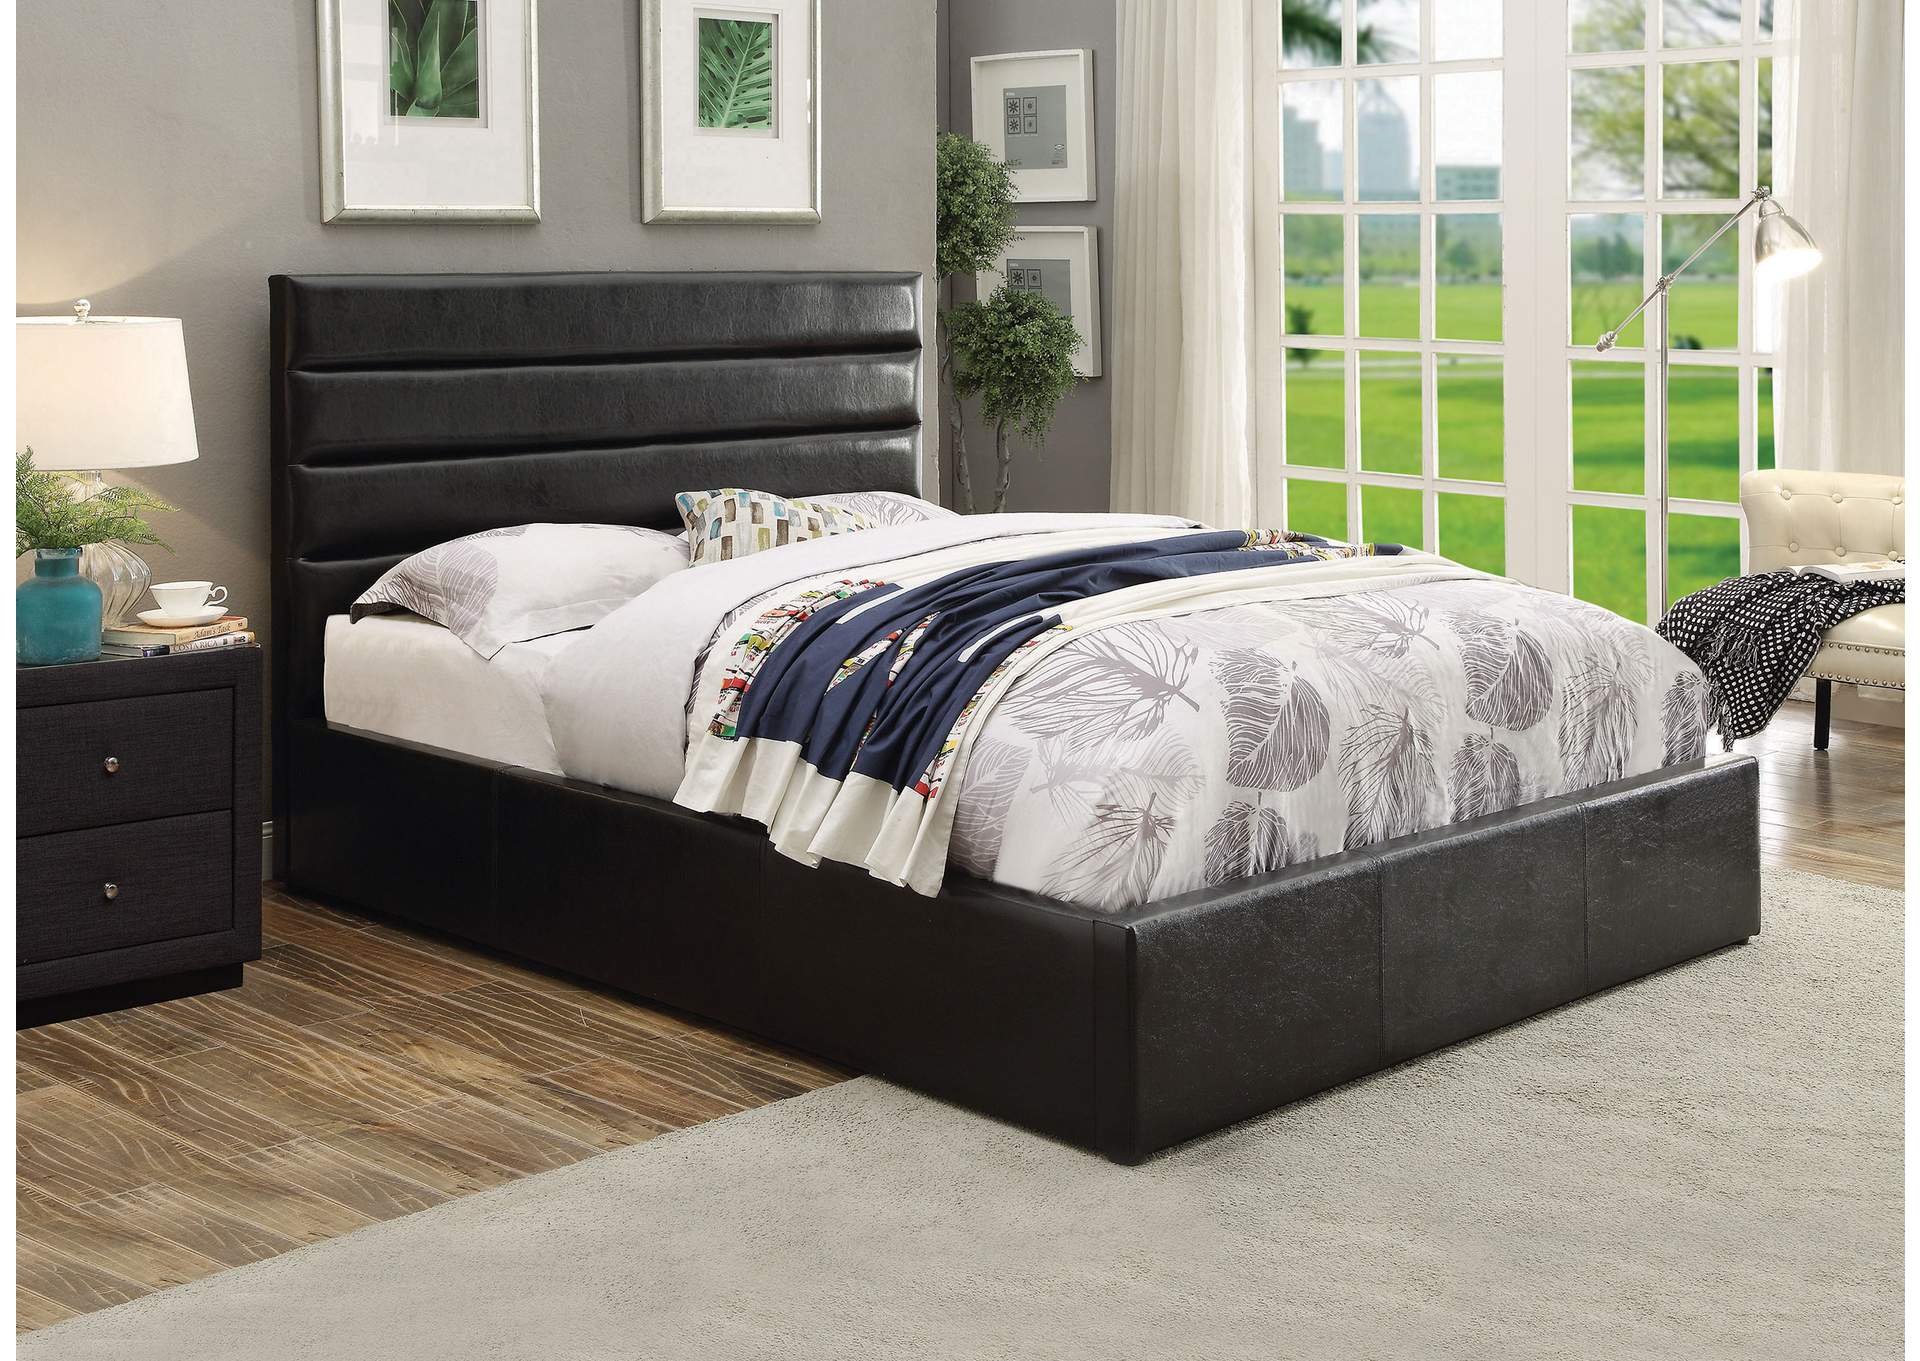 Riverbend Full Upholstered Storage Bed Black,Coaster Furniture